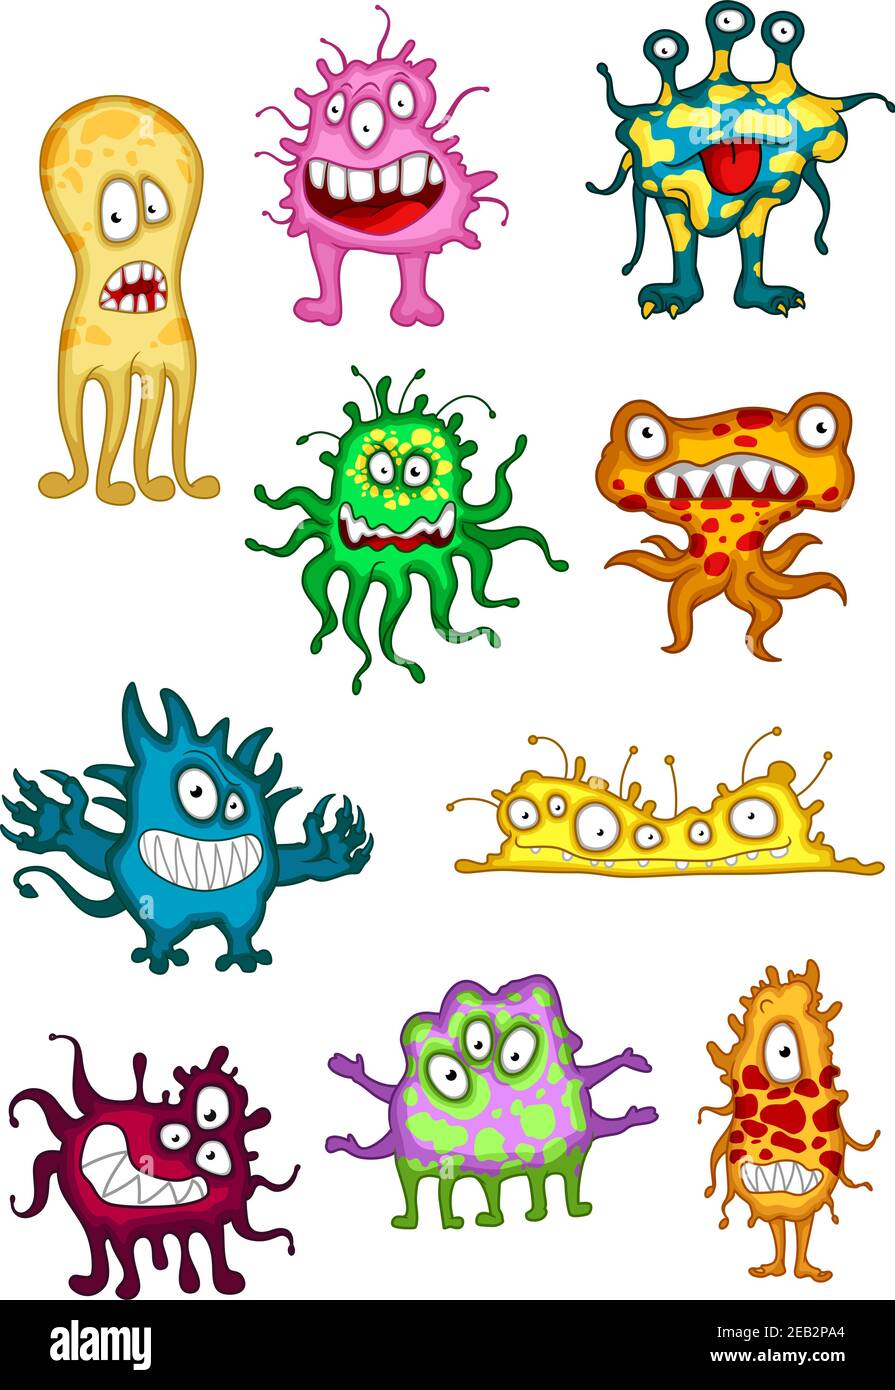 Monstres, démons, bêtes et mutants mignons de style dessin animé, avec des yeux godiants. Pour les fêtes d'Halloween ou la fête Illustration de Vecteur